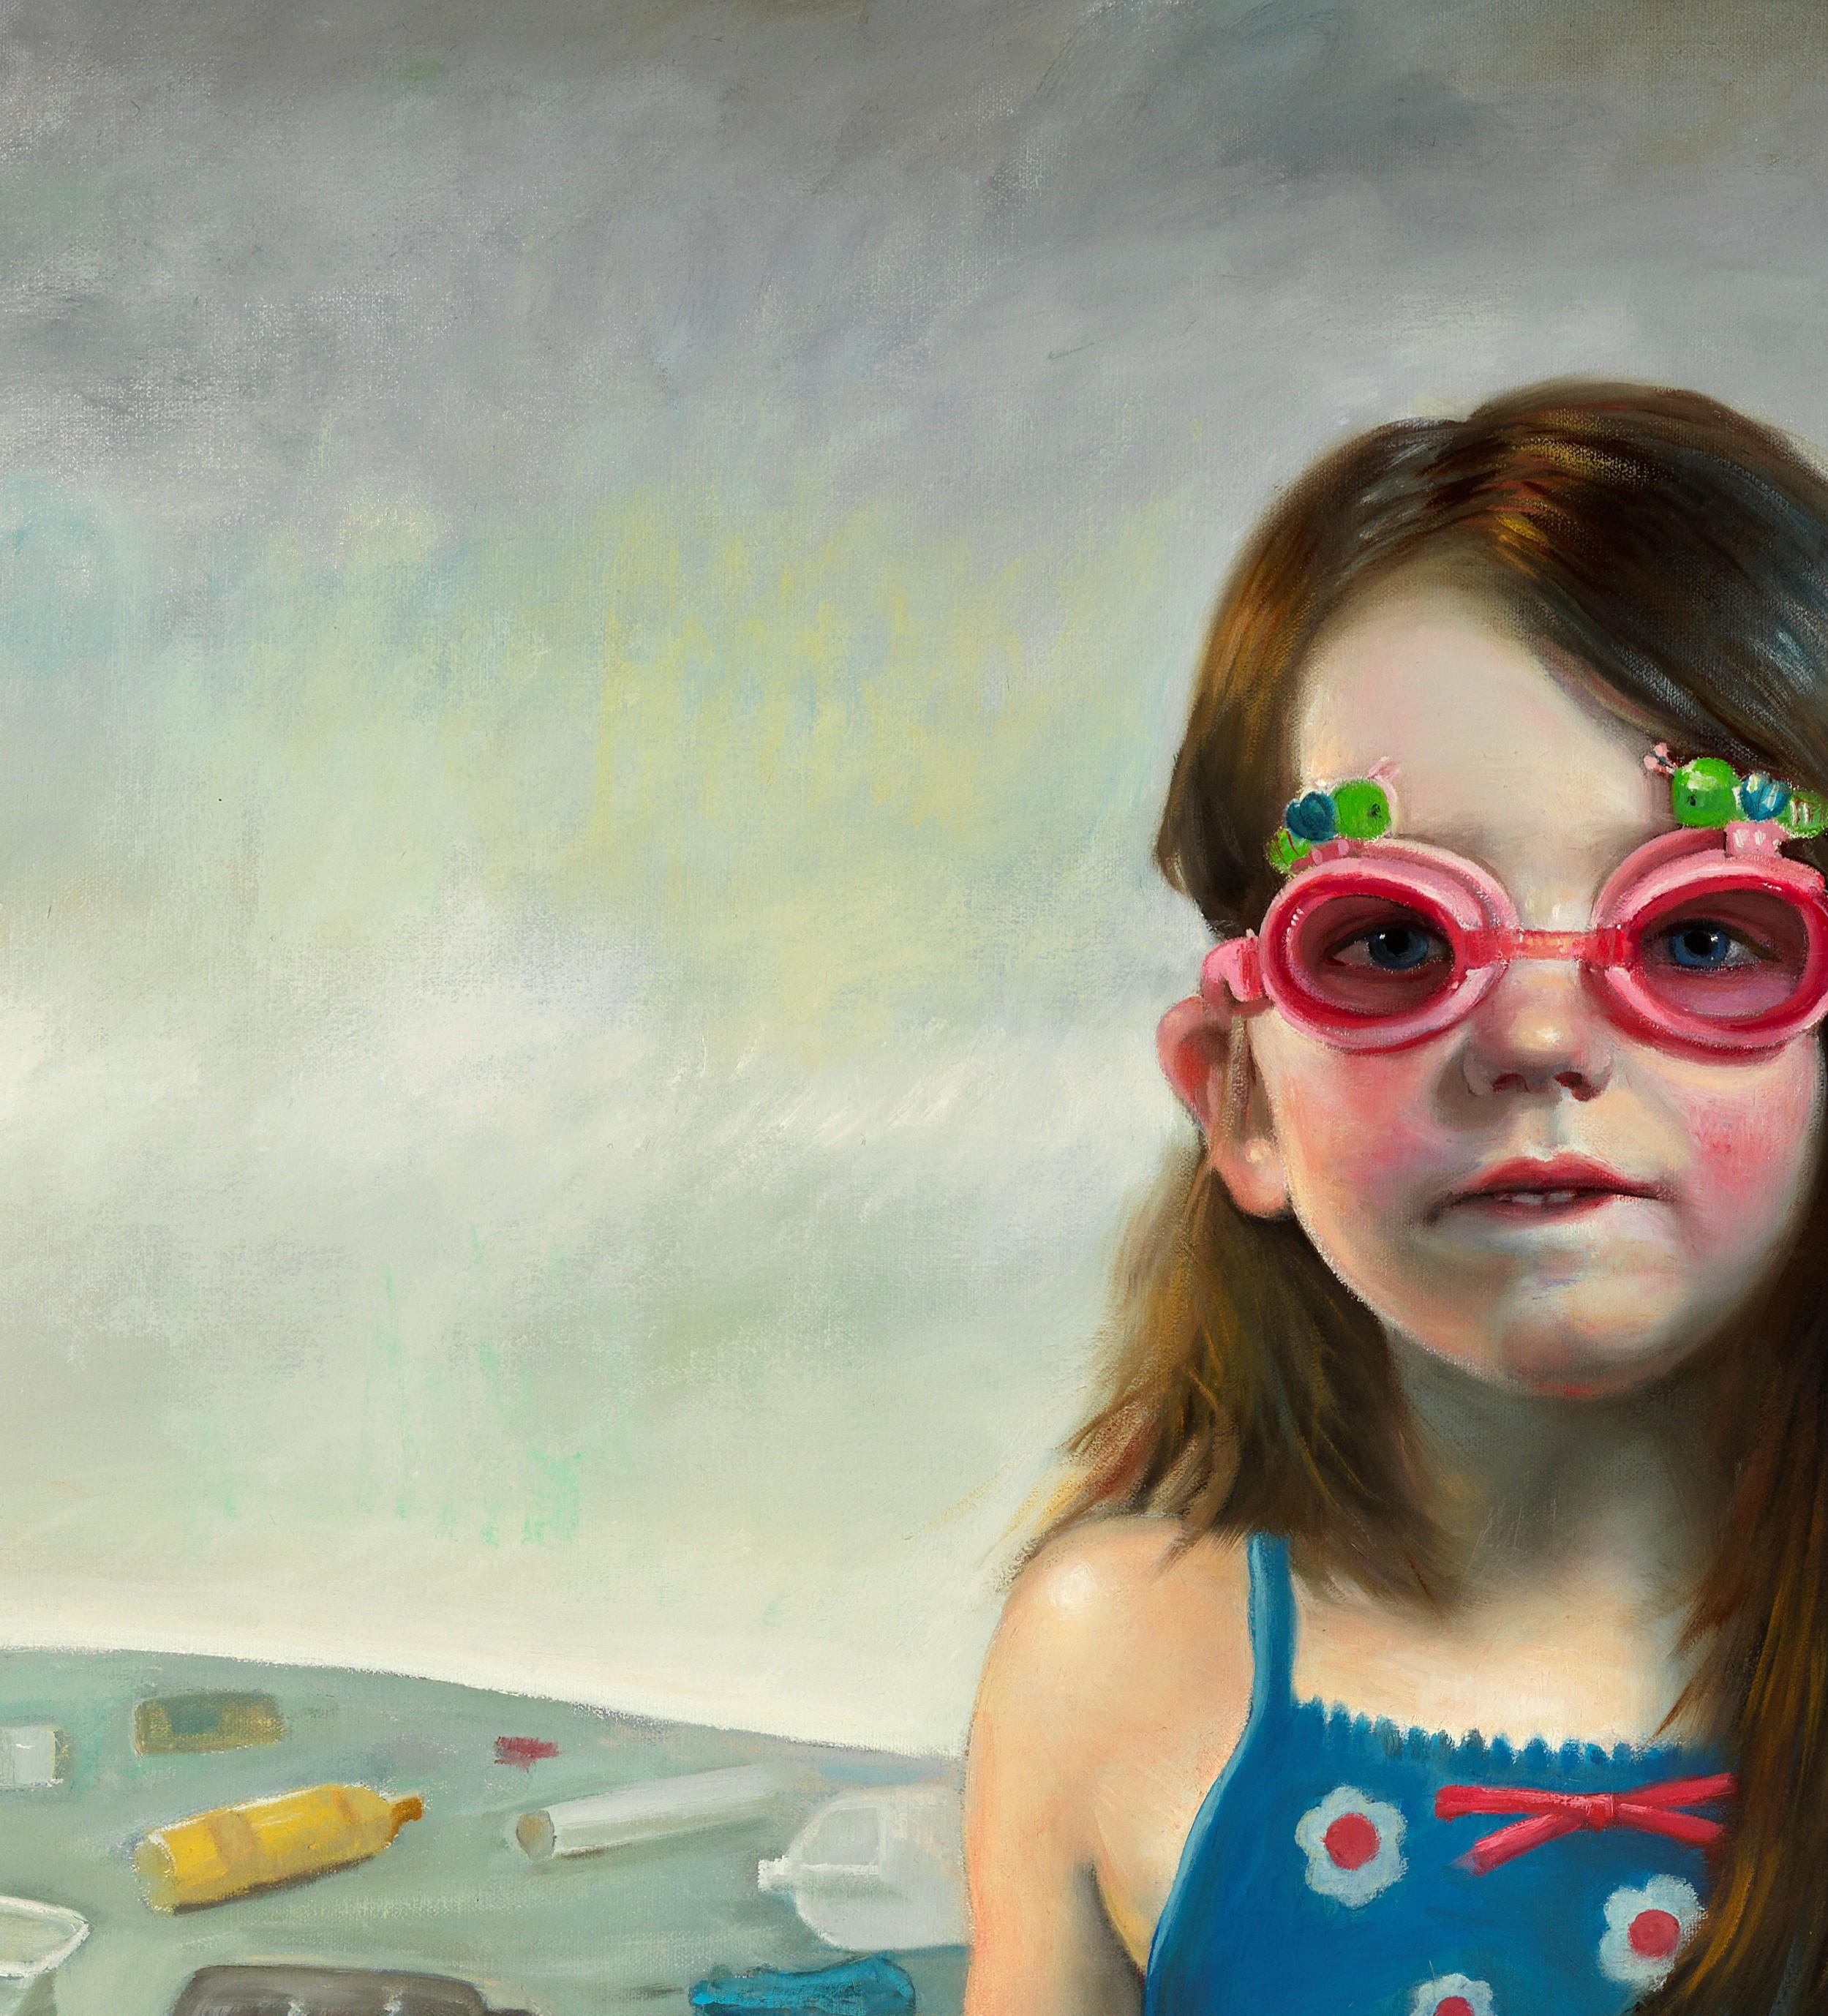 Contaminating the Innocent - Junges Mädchen, das von Plastikmüll umgeben ist (Zeitgenössisch), Painting, von Bruno Surdo